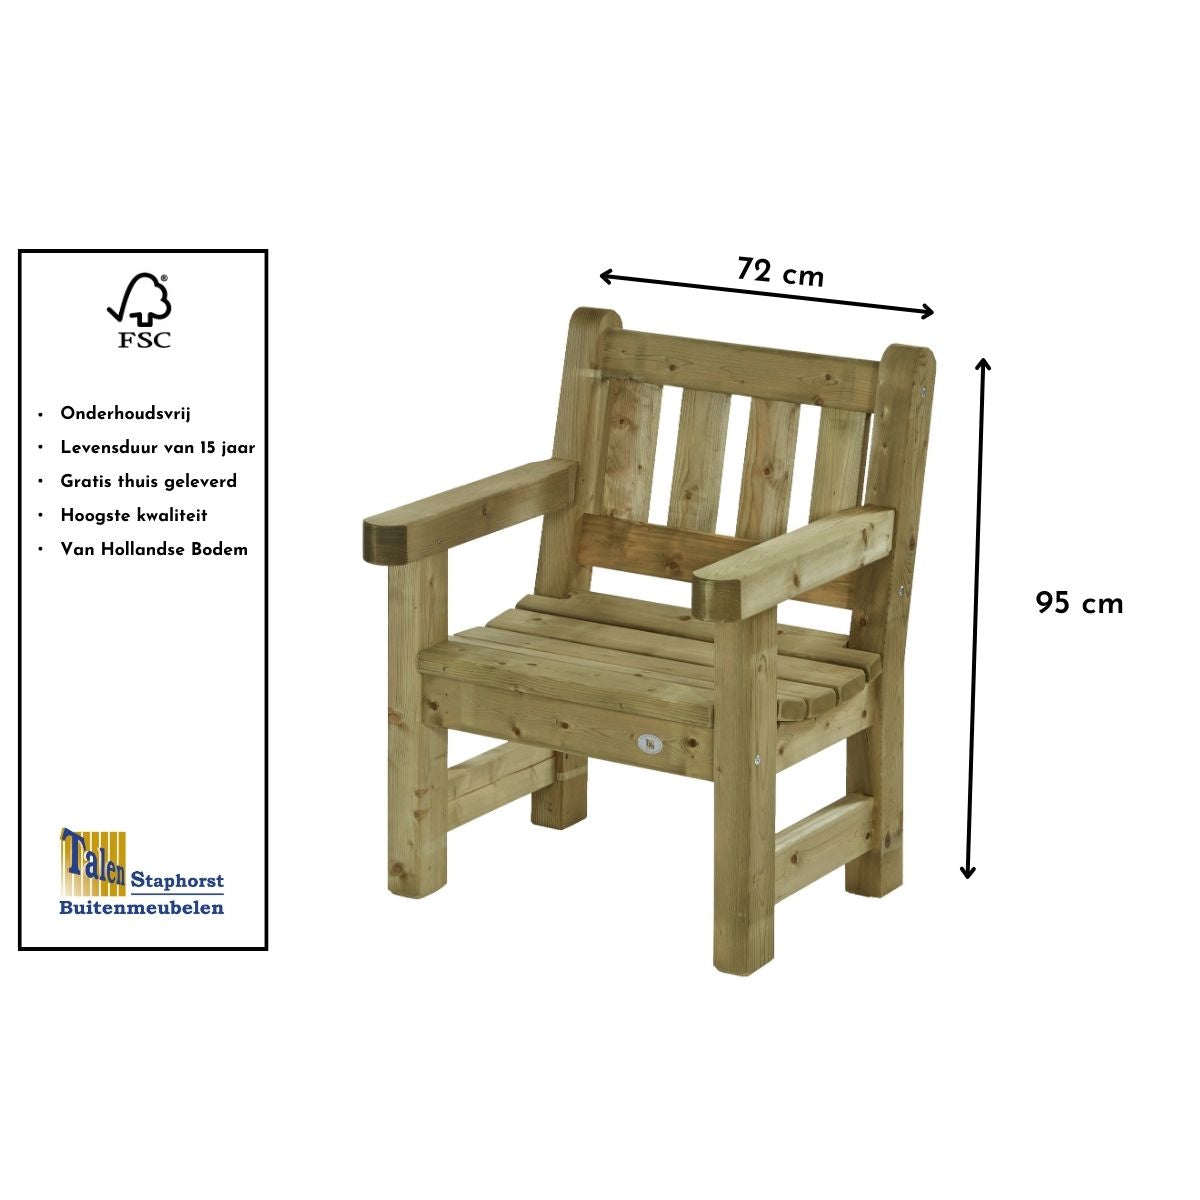 mooie stoel van hout voor in de tuin goede kwaliteit gaat makkelijk 15 jaar mee staat goed in elke garden snel geleverd 